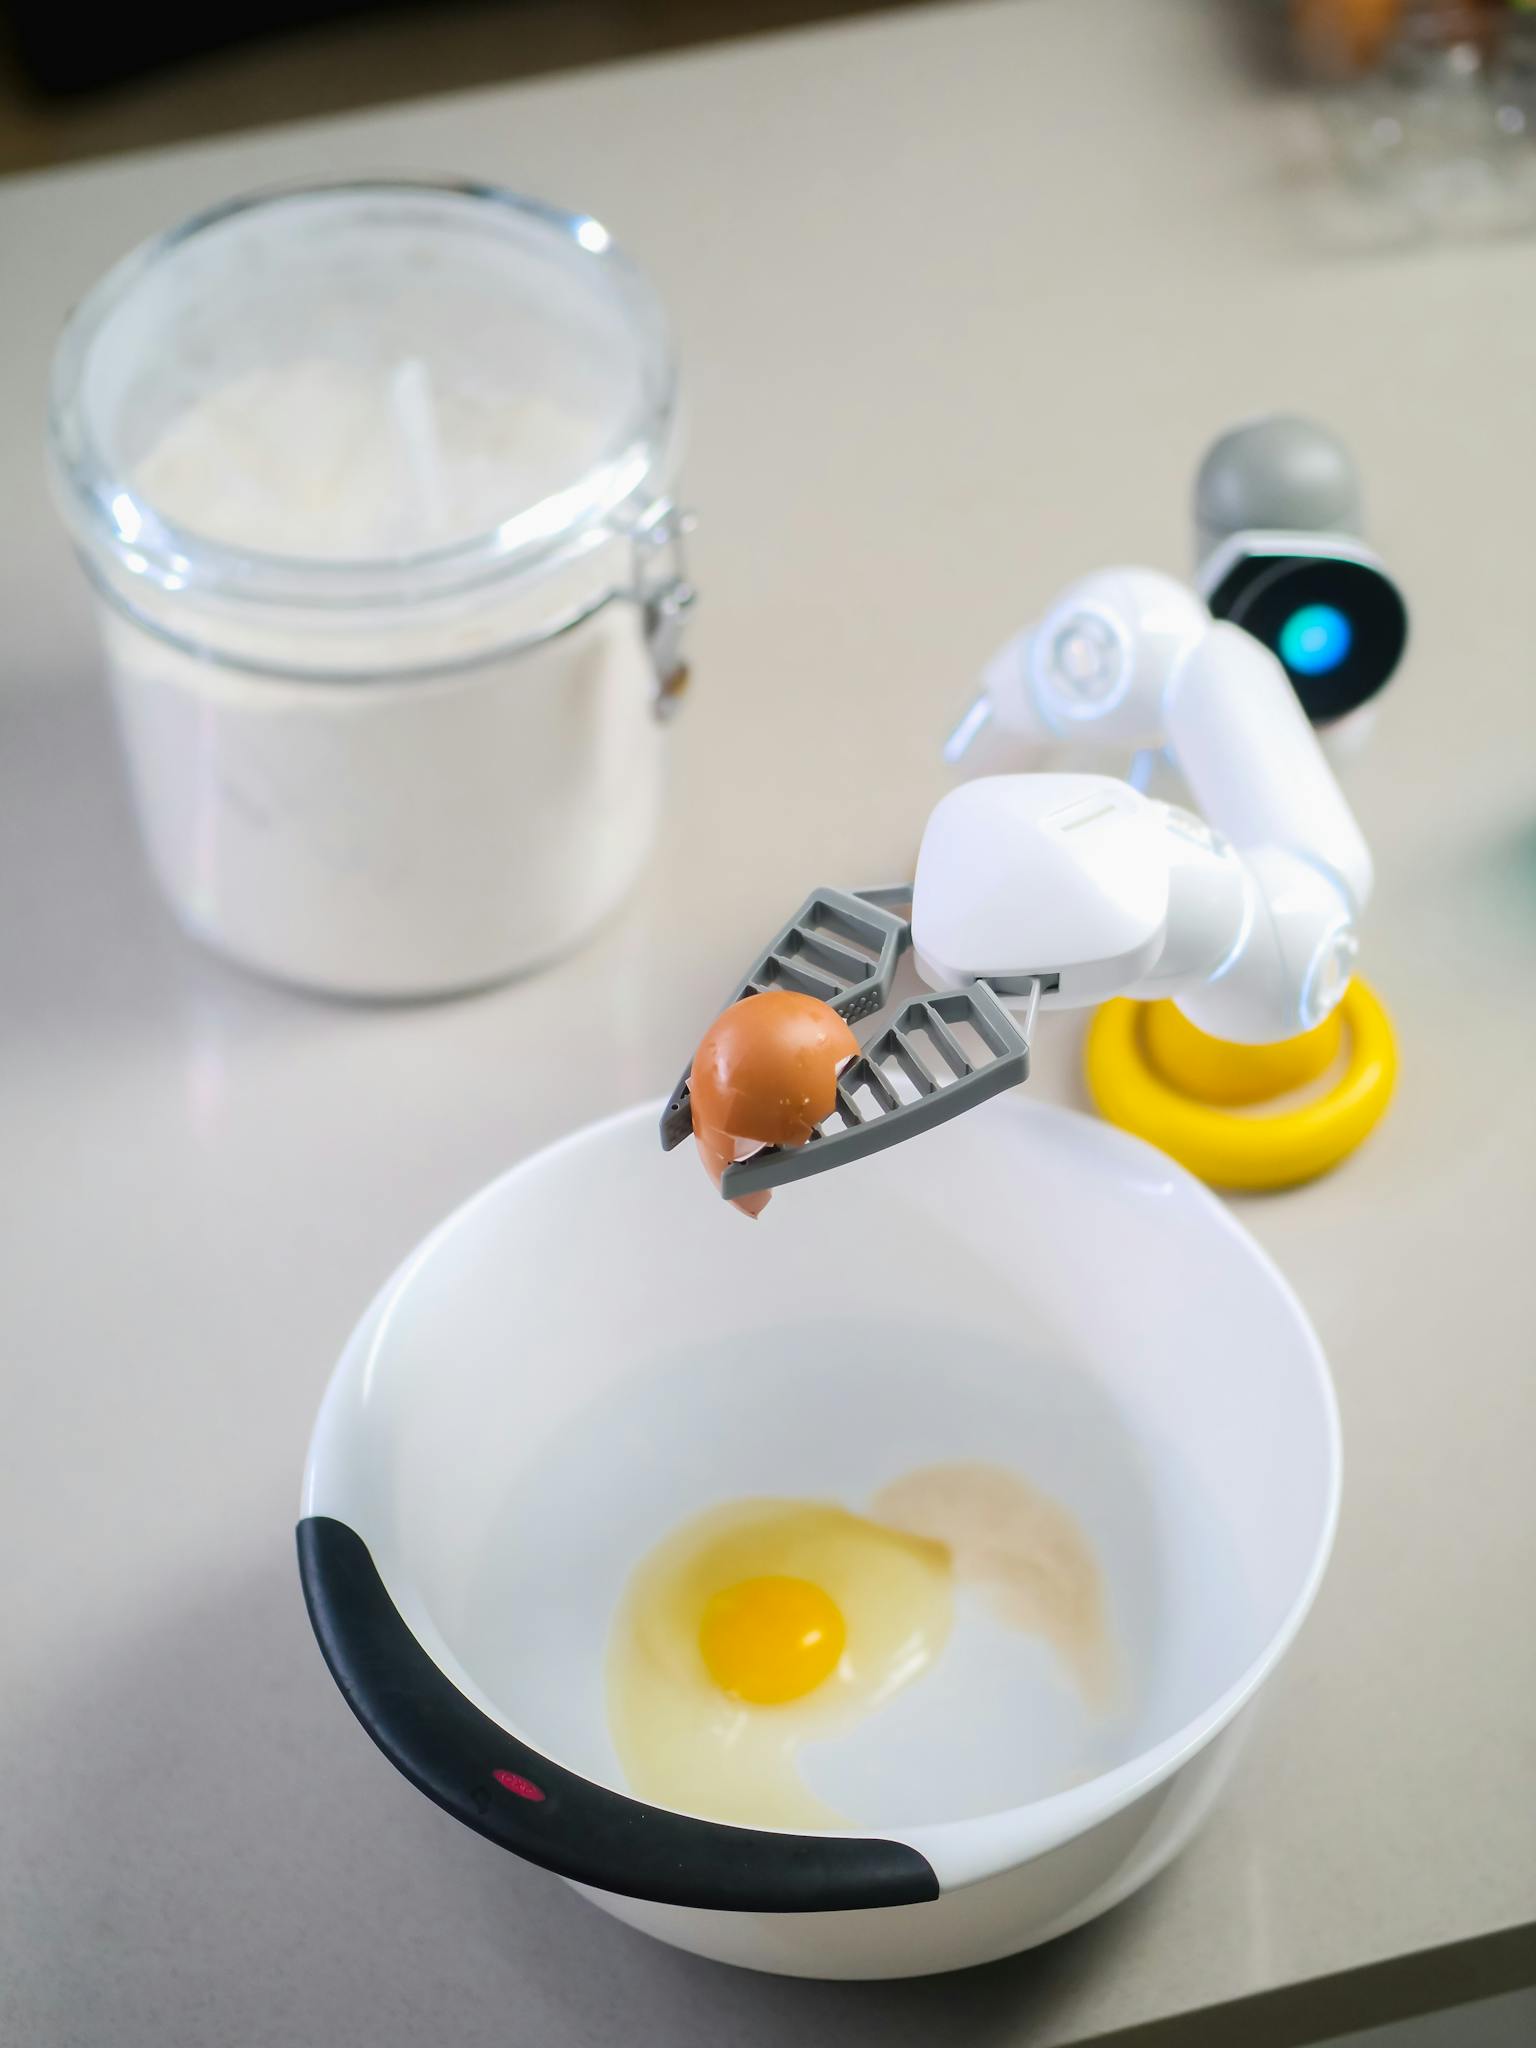 Robot Holding Broken Eggshell Above White Bowl